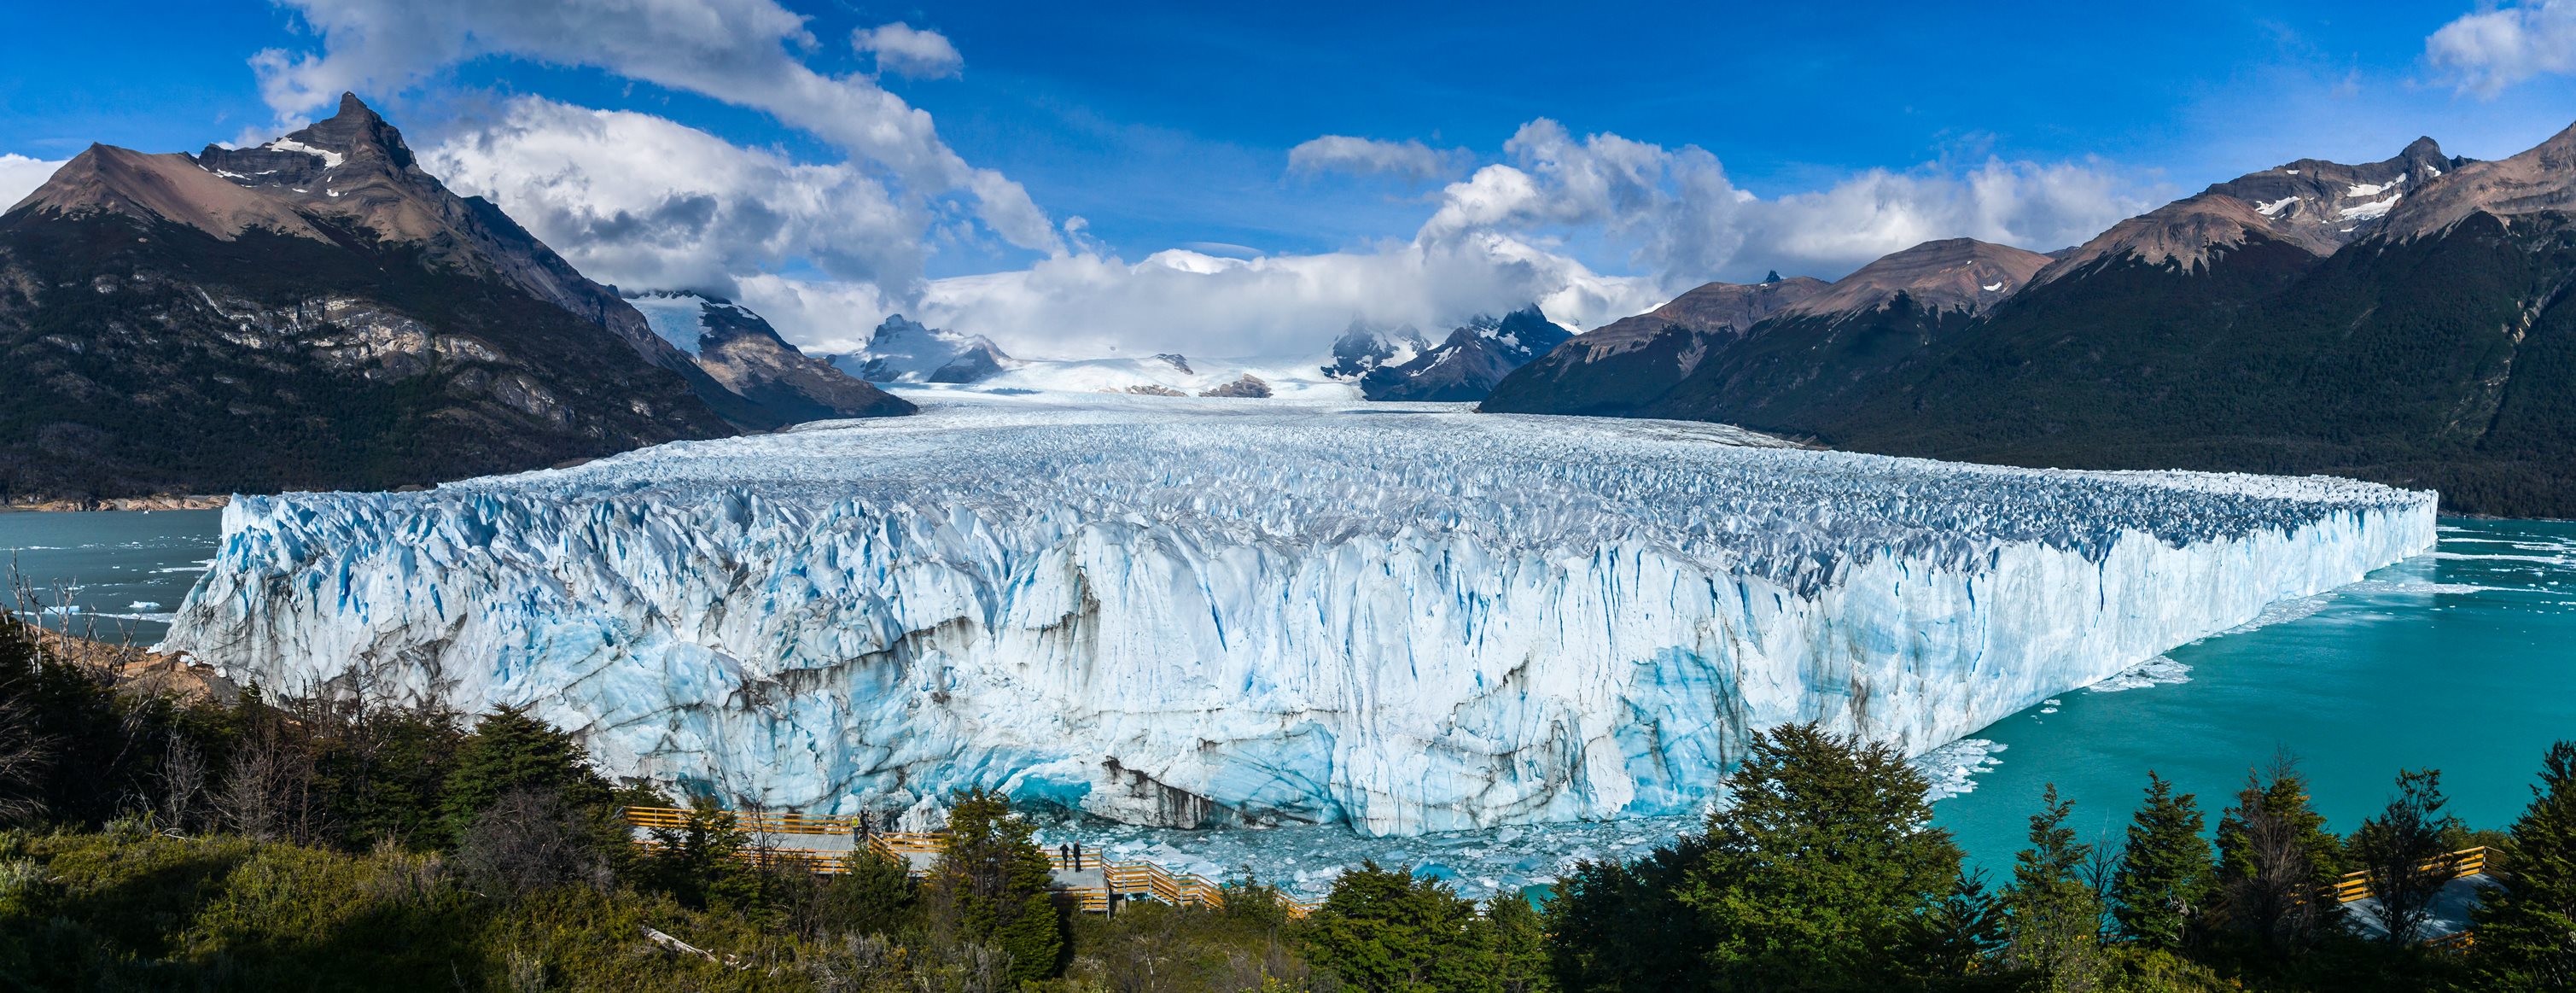 엘 칼라파테 페리토 모레노 빙하, 출처 Getty Images.jpg